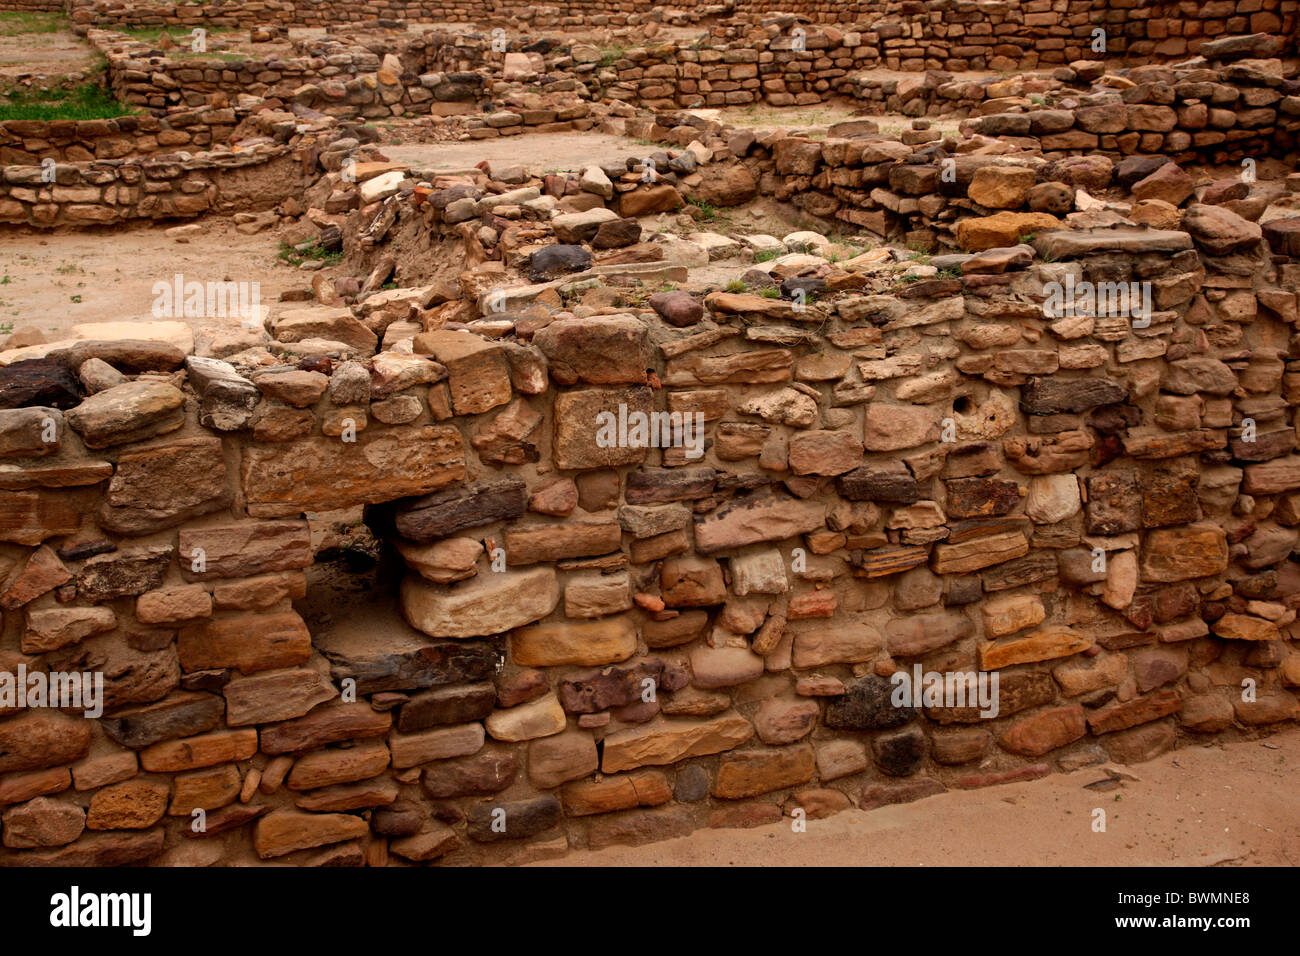 Ruins of Harappa civilisation, Dholavira, Gujarat, India Stock Photo